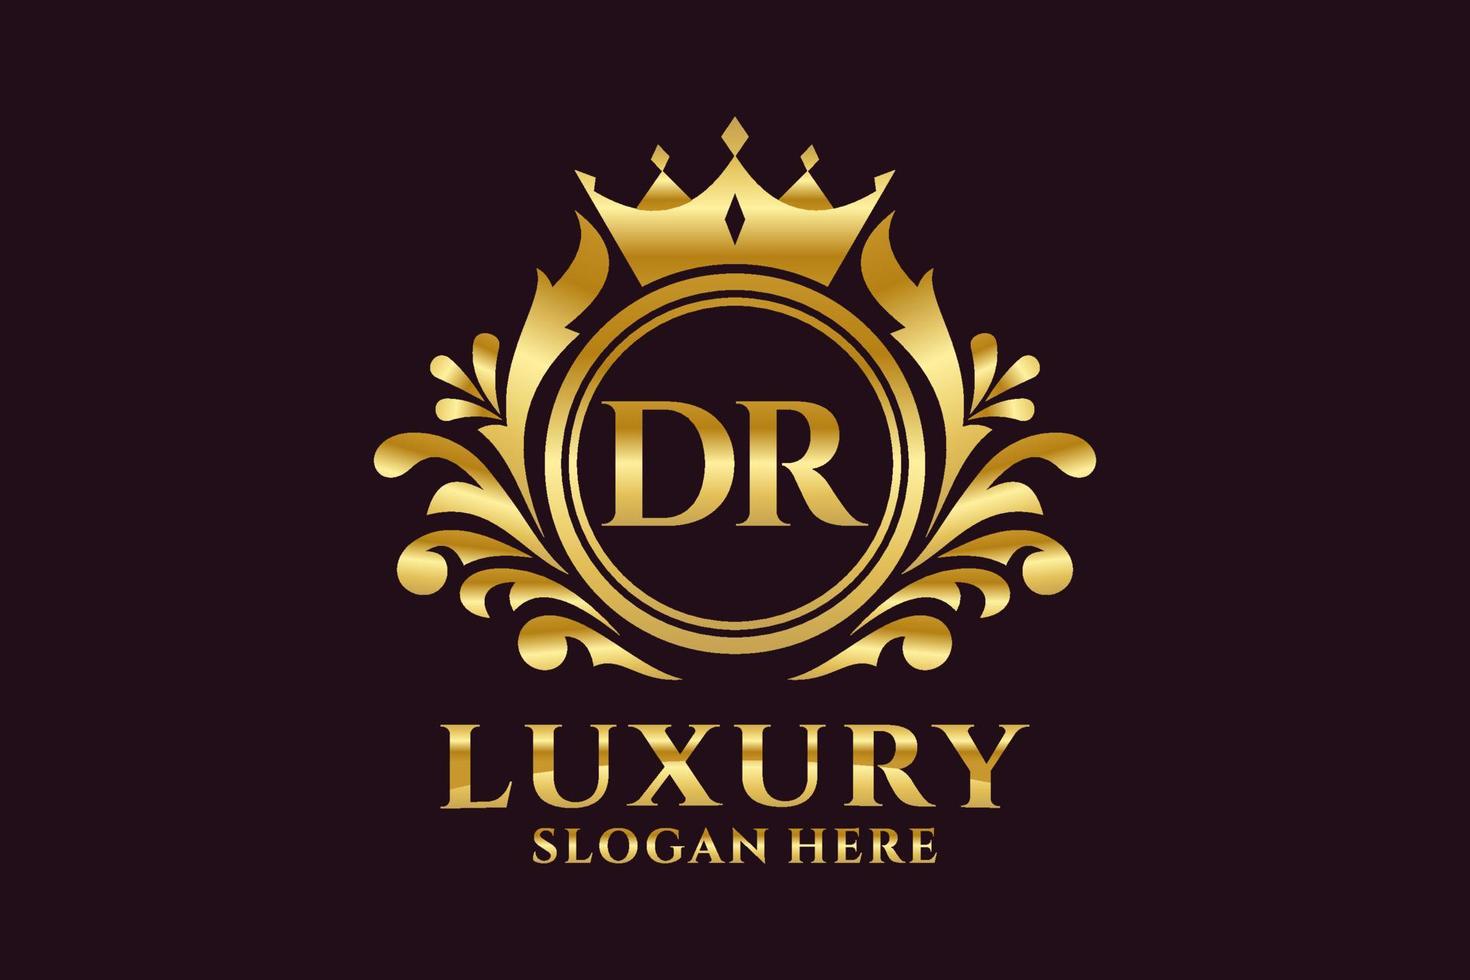 Anfangsbuchstaben des königlichen Luxus-Logos von dr in Vektorgrafiken für luxuriöse Branding-Projekte und andere Vektorillustrationen. vektor